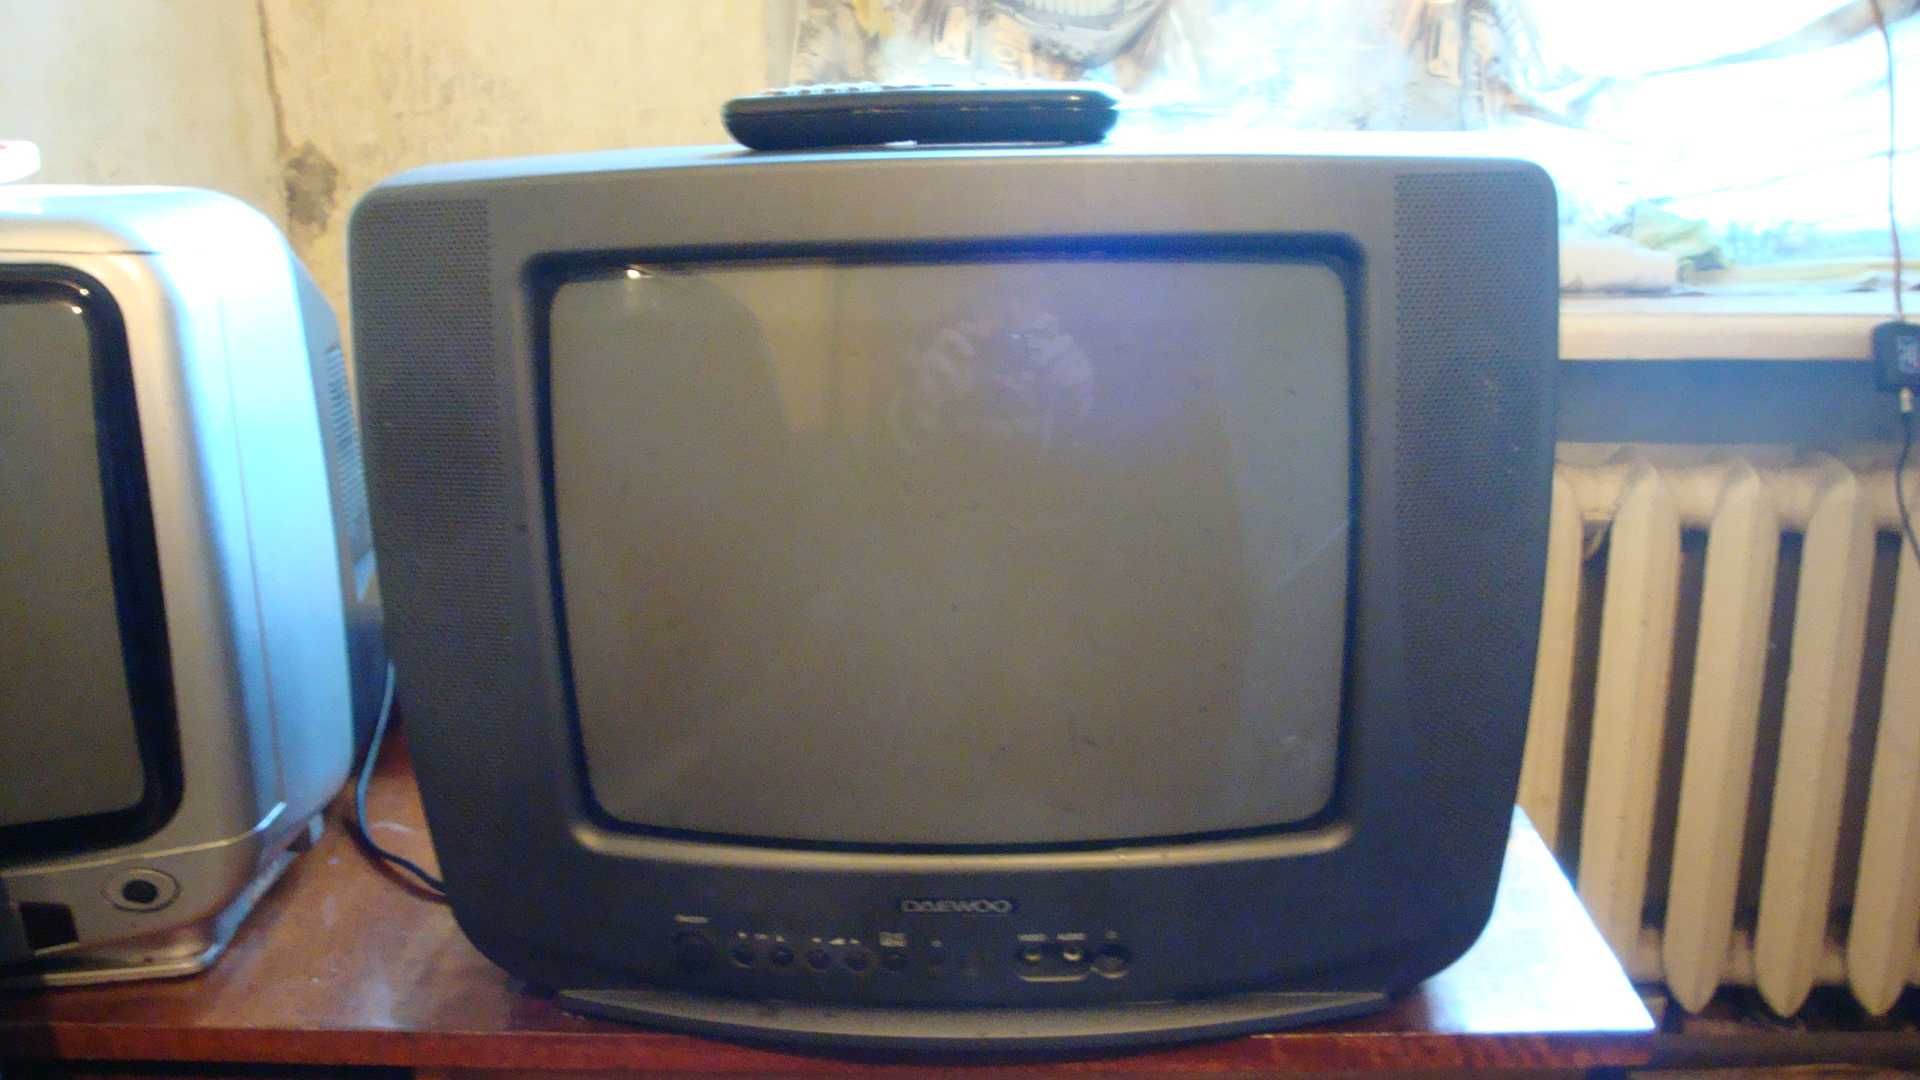 Телевизоры разных размеров, все обслужены, с гарантией. От 400гр.